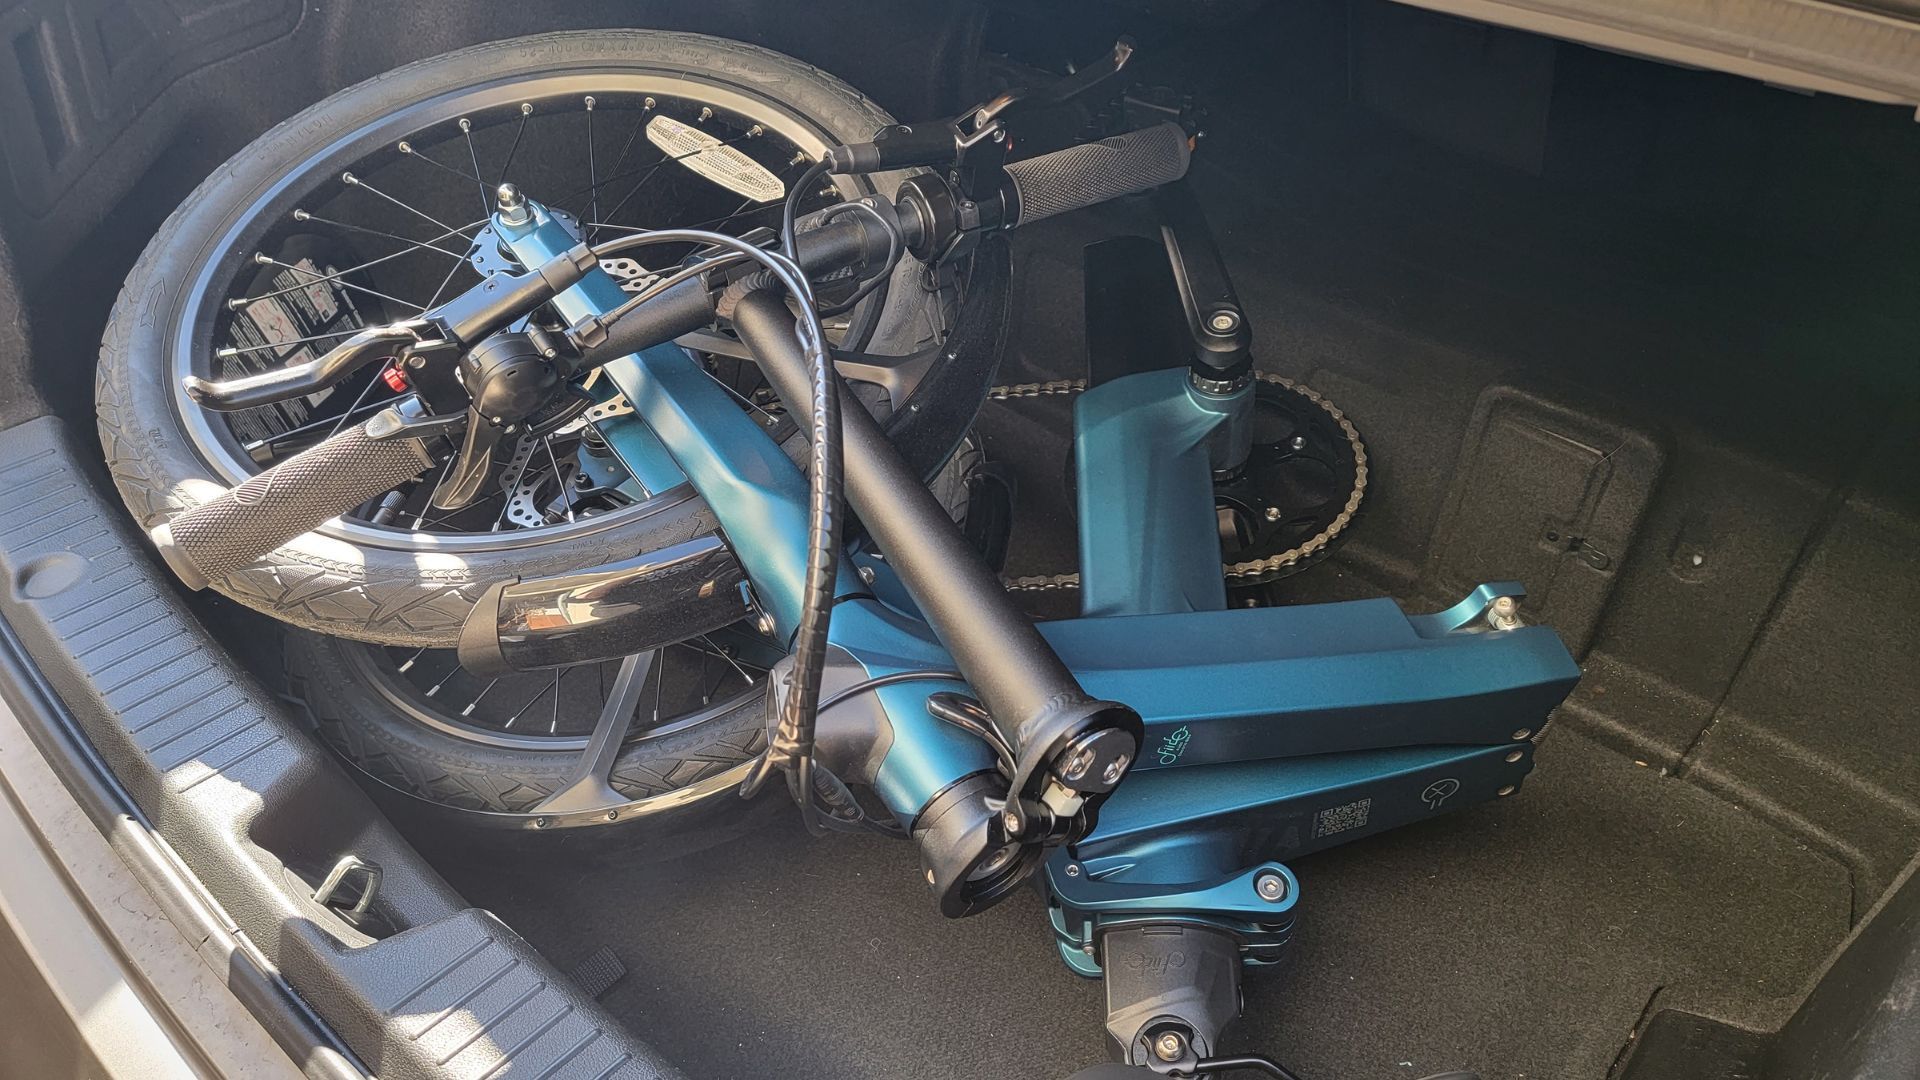 fiido x folding e-bike in trunk of a car